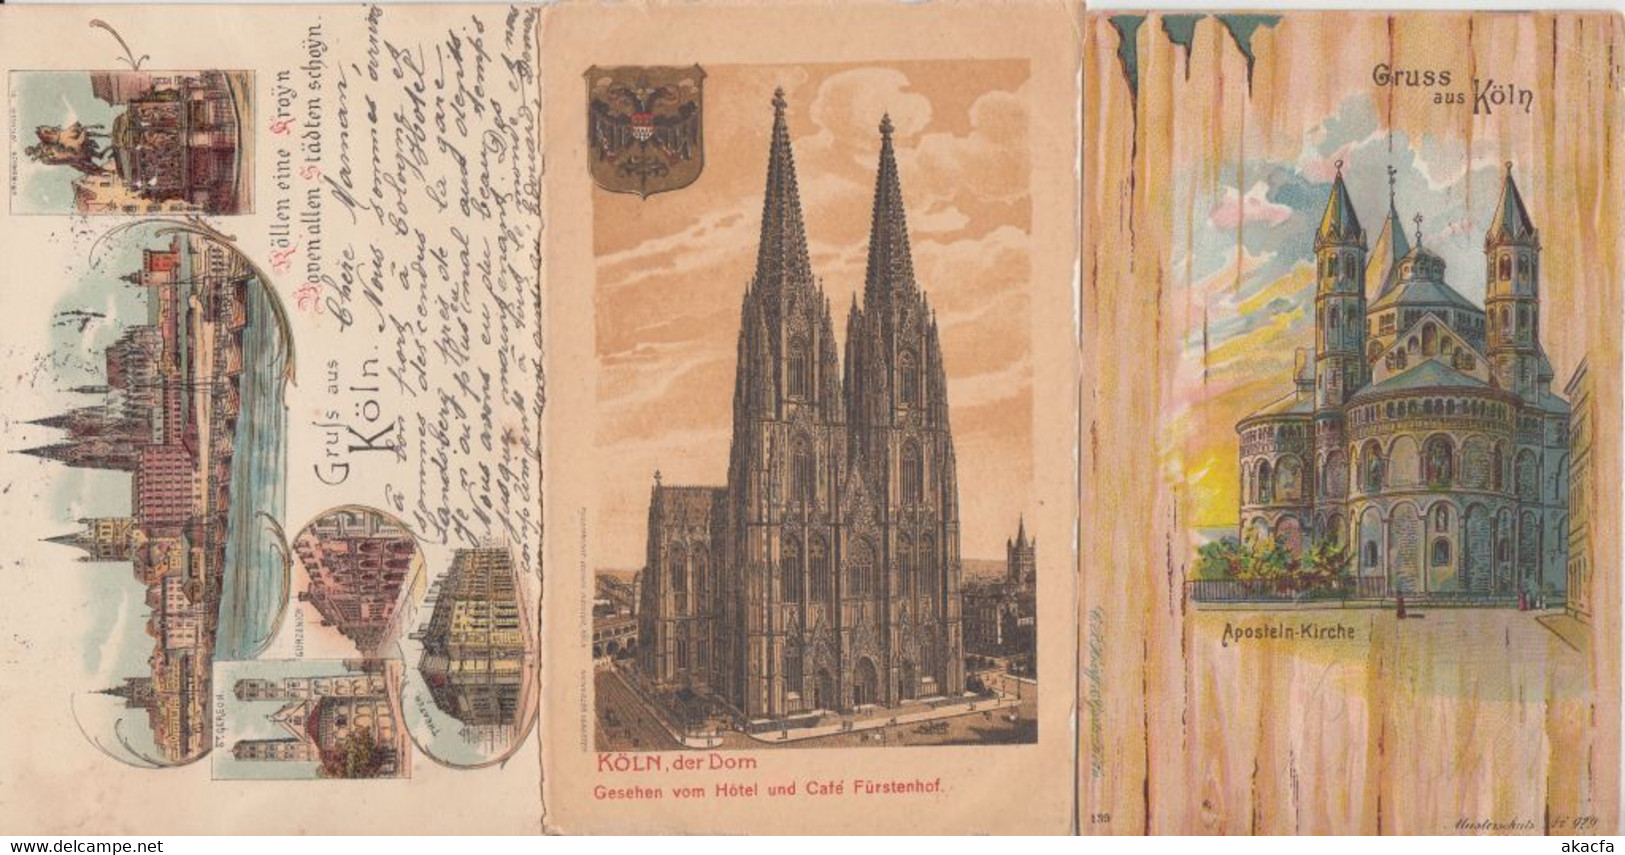 COLOGNE KÖLN GERMANY 31 Vintage LITHO Postcards mostly pre-1905 (L2529)